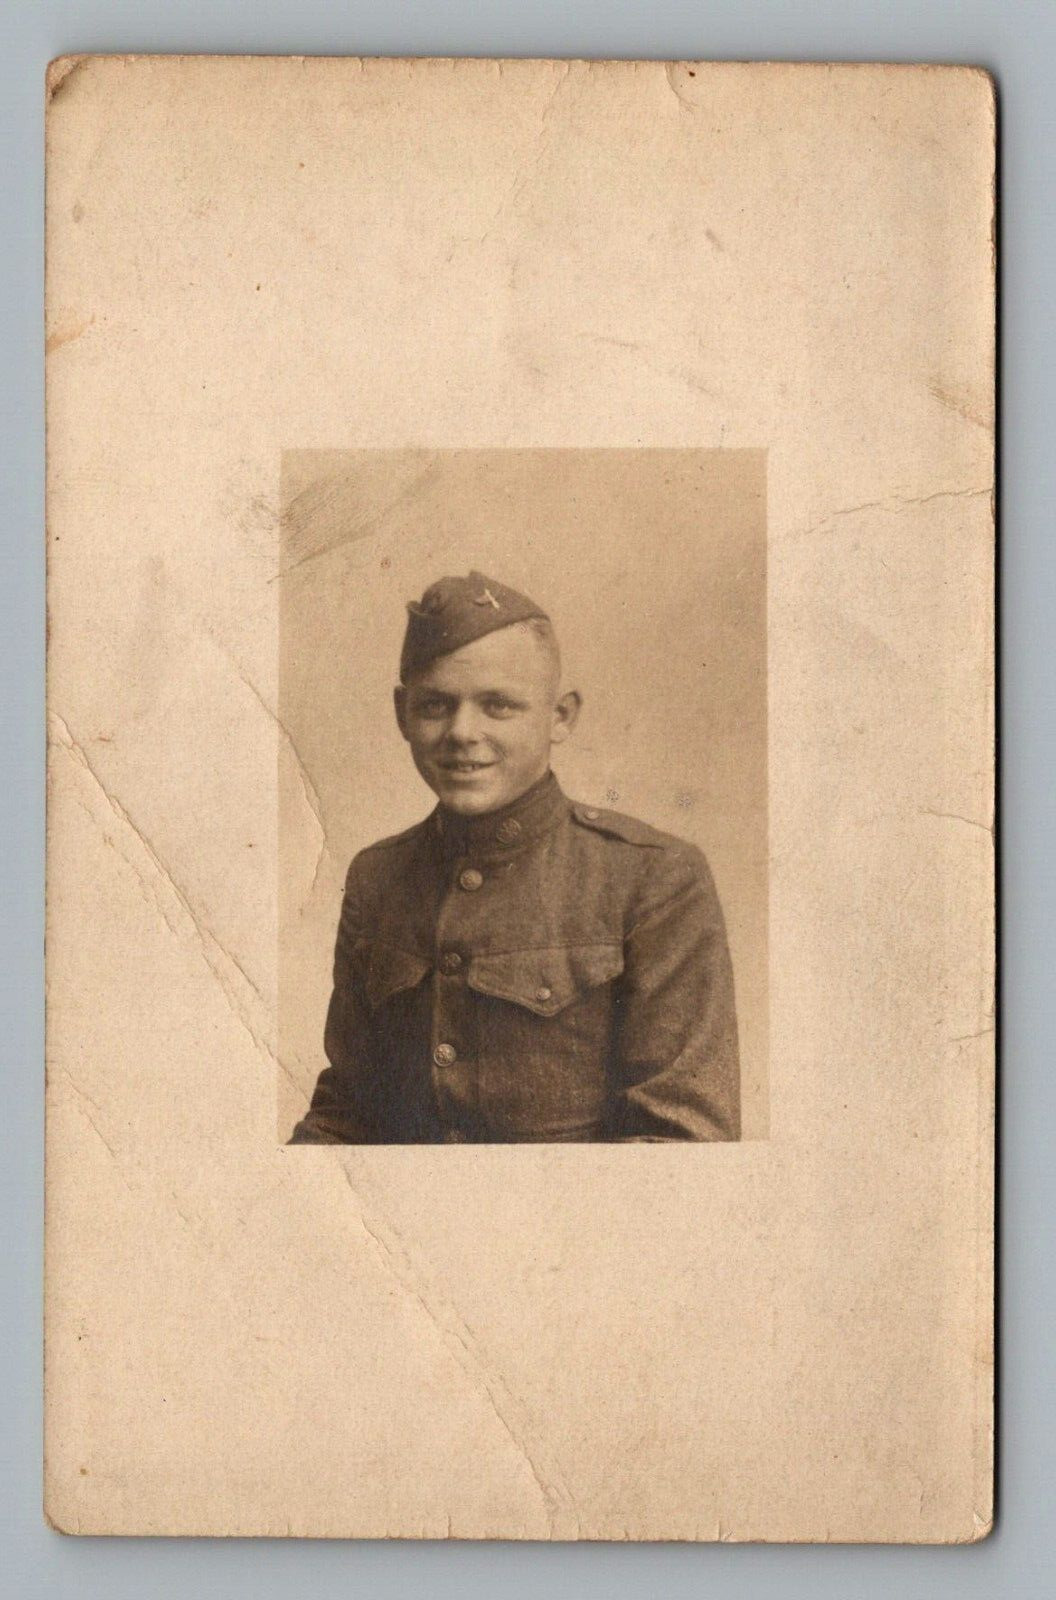 Postcard RPPC B&W WWI Military Army Doughboy AEF Soldier Photo VTG c1919  H14